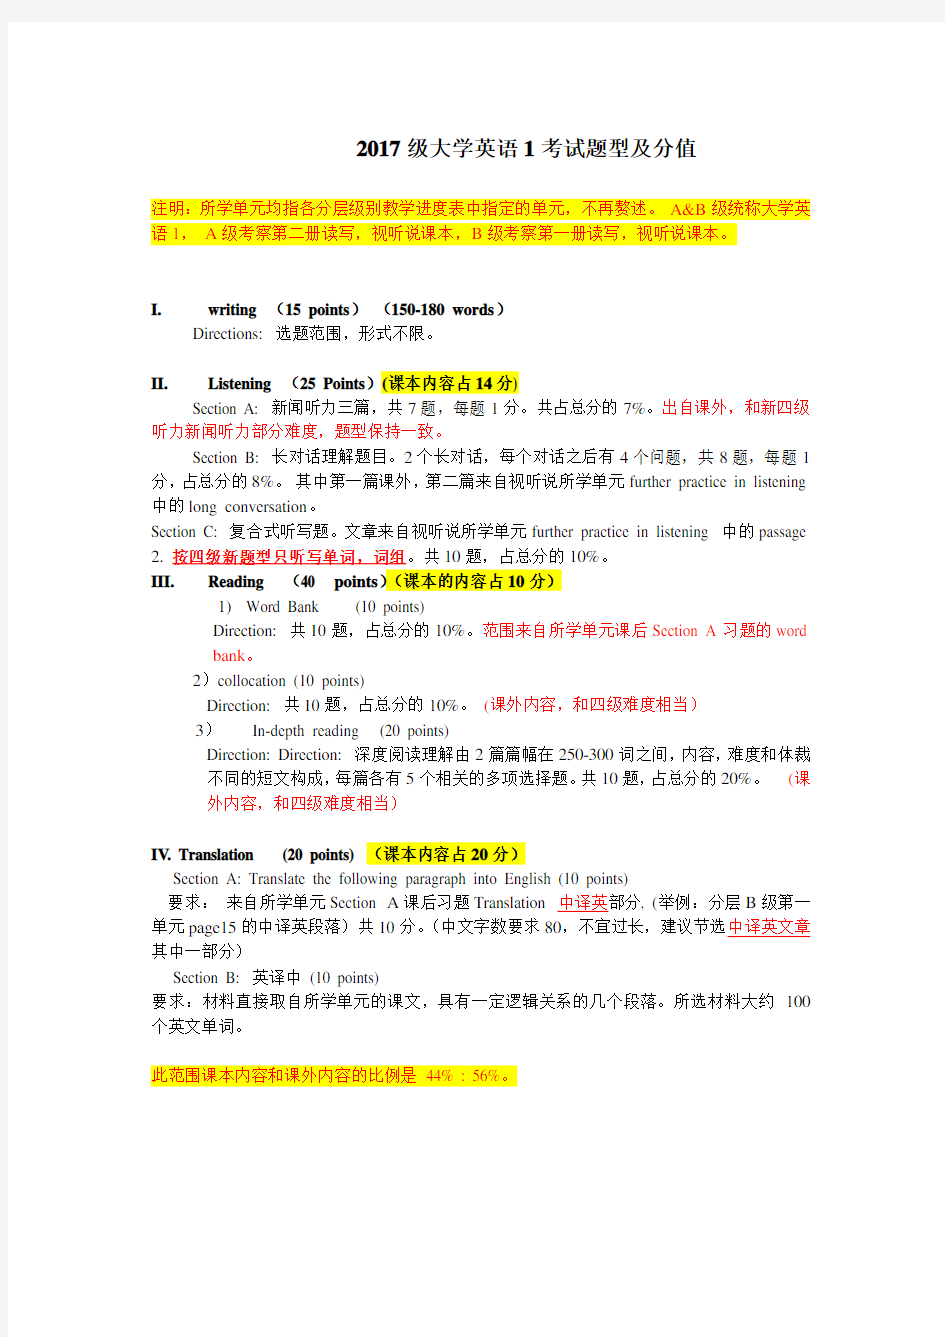 华南农业大学2017级大学英语1期末考试题型(终稿)